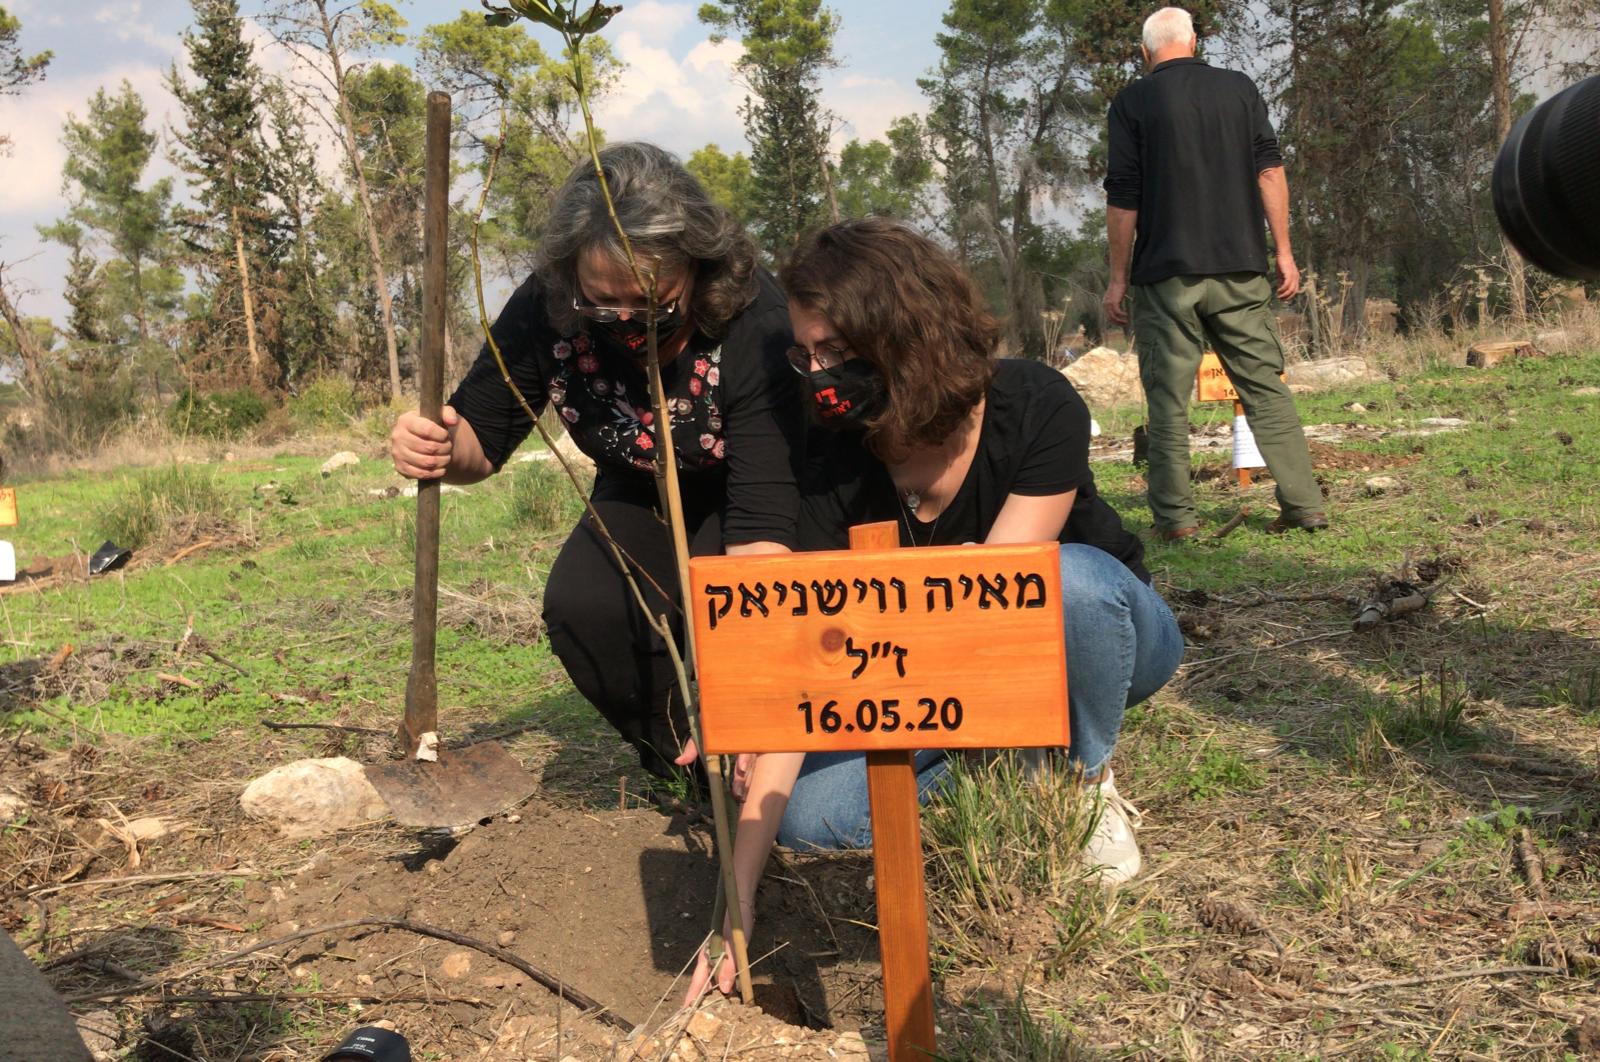 20 деревьев в память о жертвах насилия в Израиле - фото 3